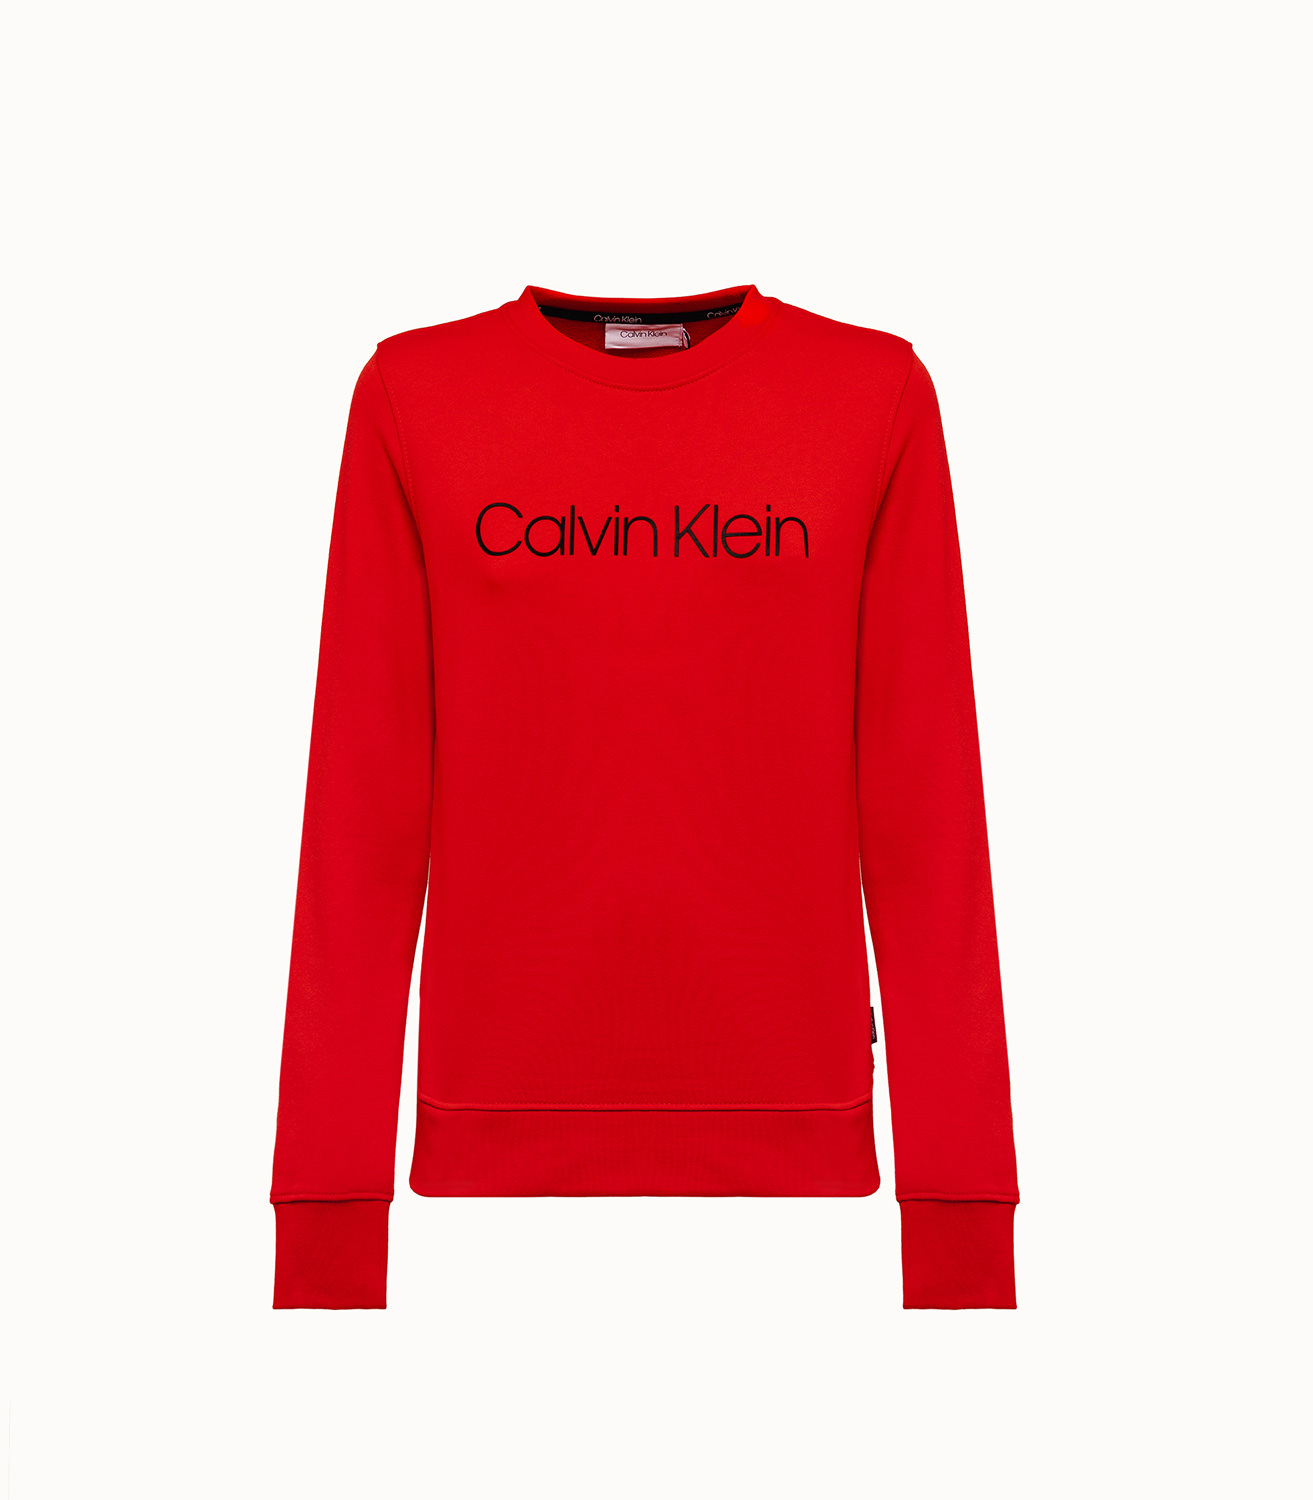 15 Best Calvin Klein sweatshirt ideas